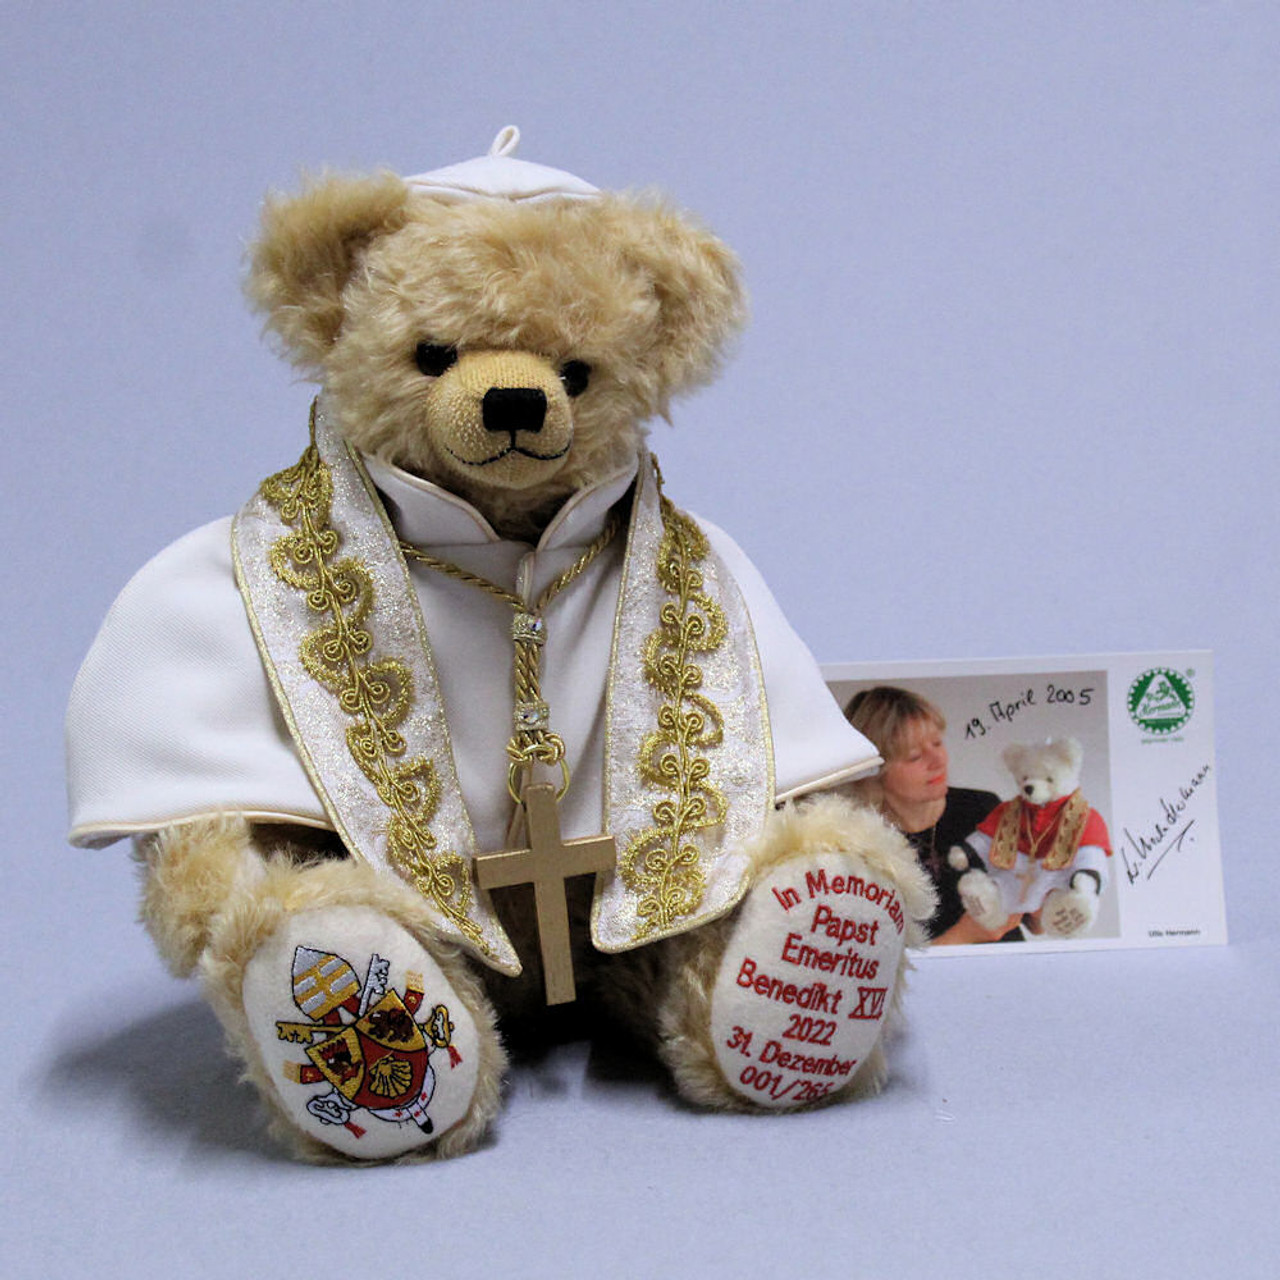 Pope Emeritus Benedict XVI. In Memoriam, 38 cm Teddy Bear Hermann-Coburg EAN 190781